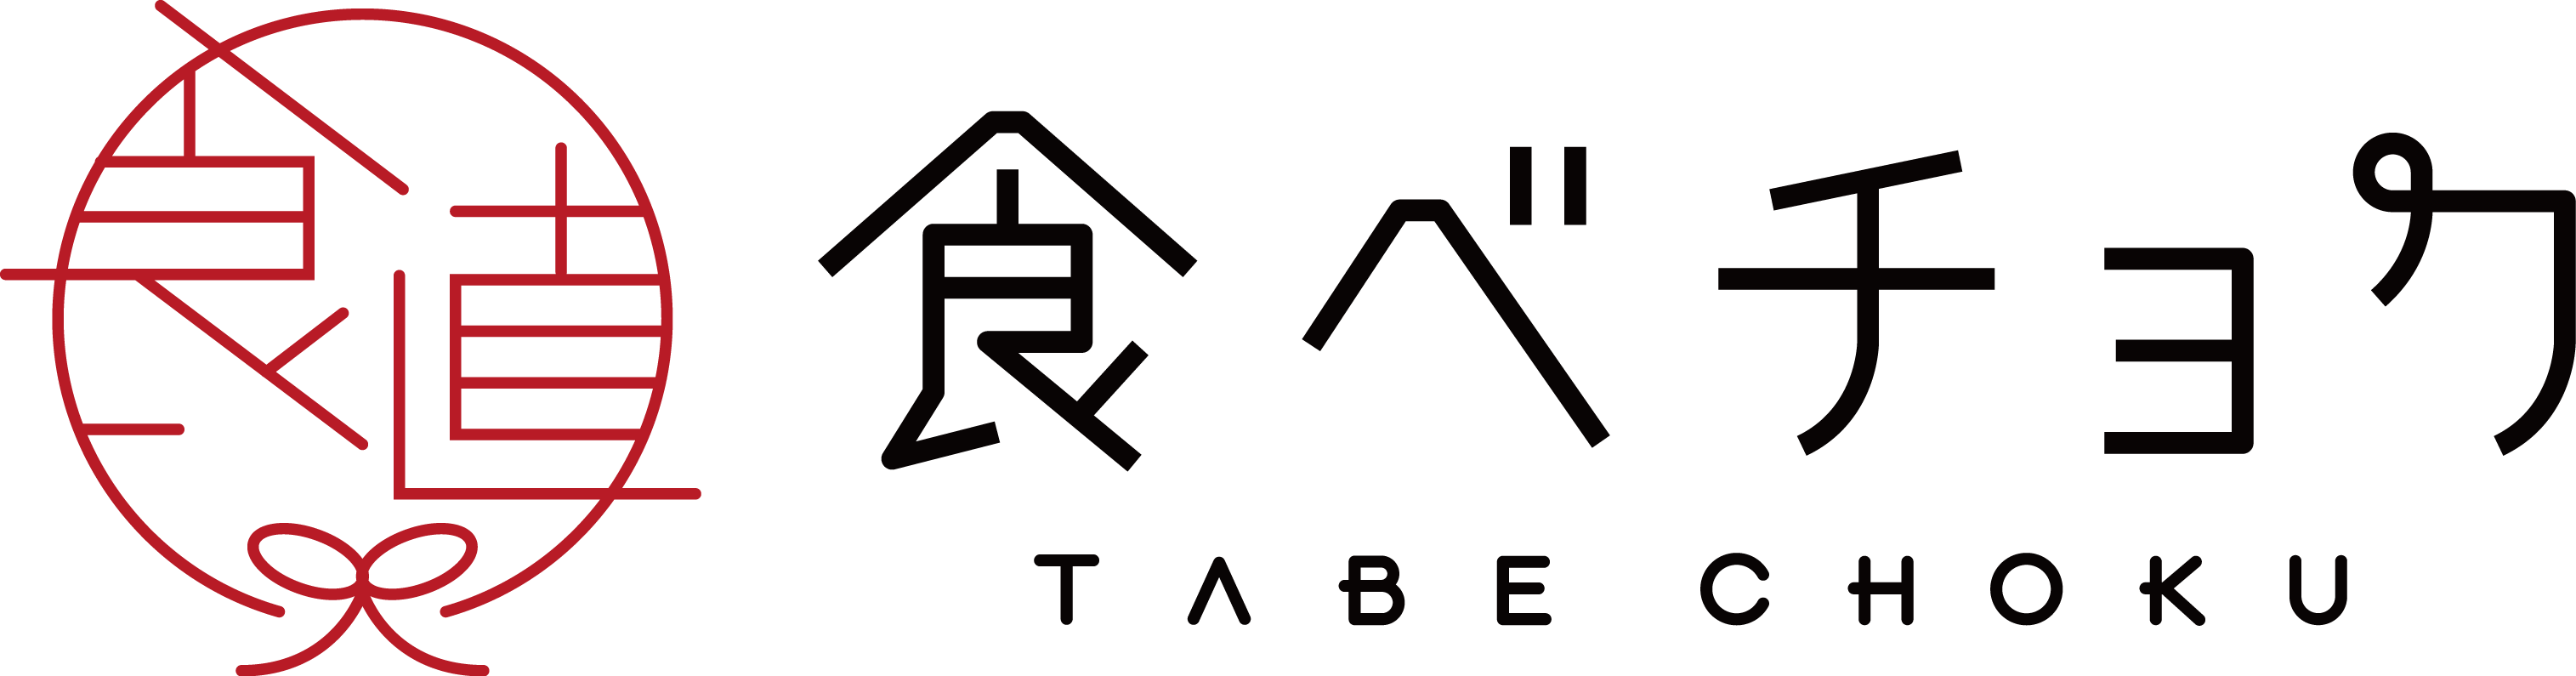 tabechokuロゴ